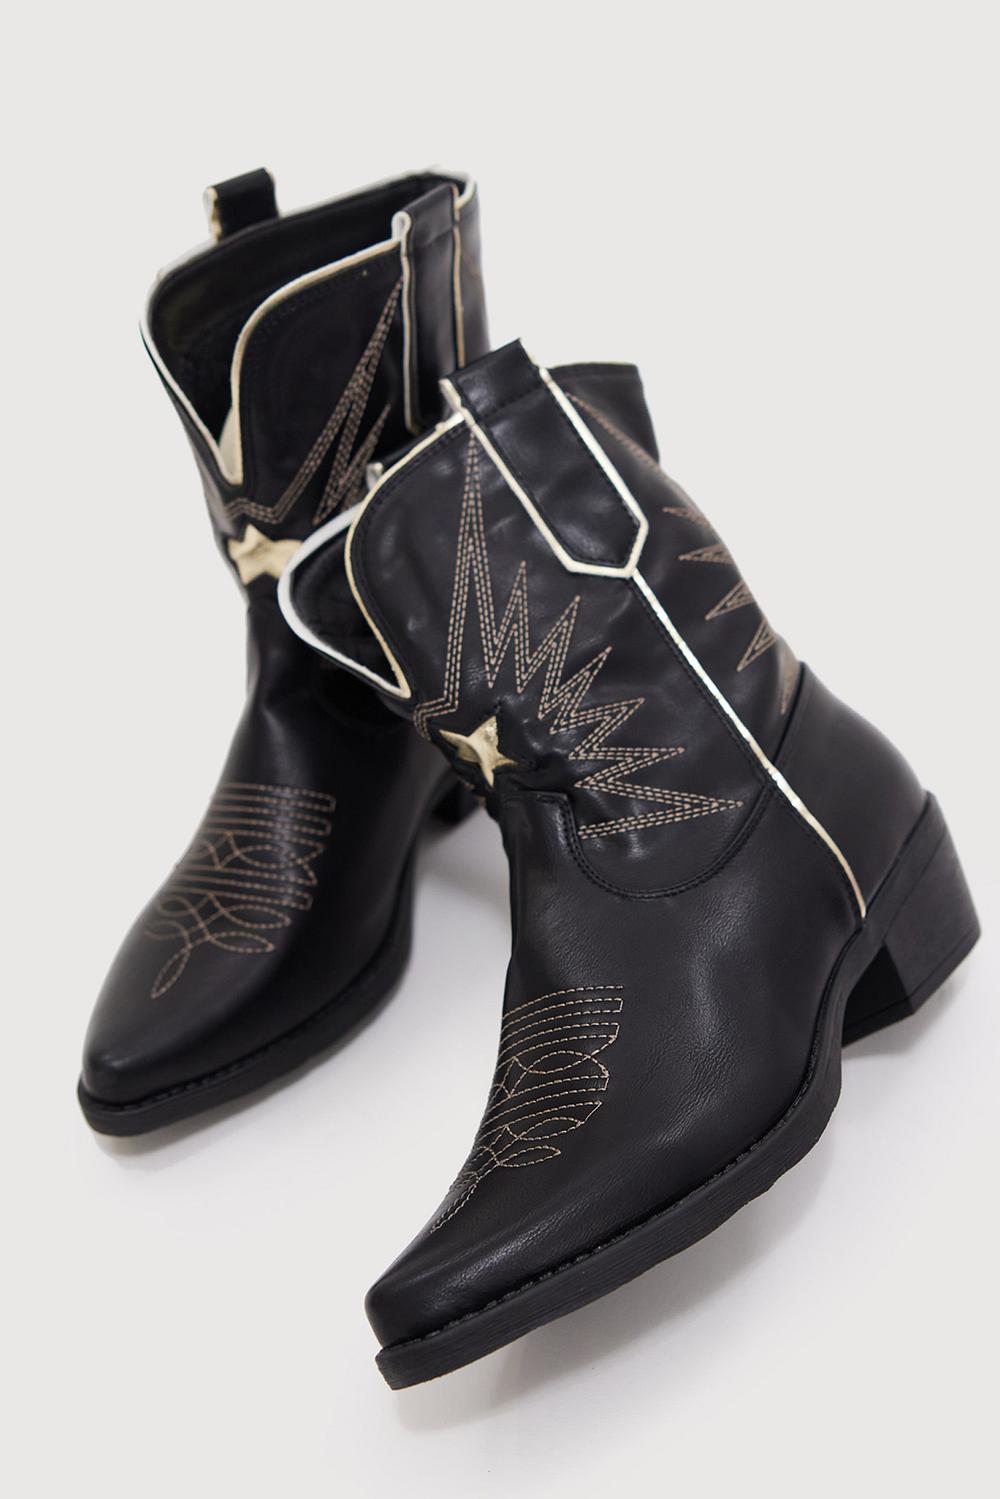 Black cowboy boots